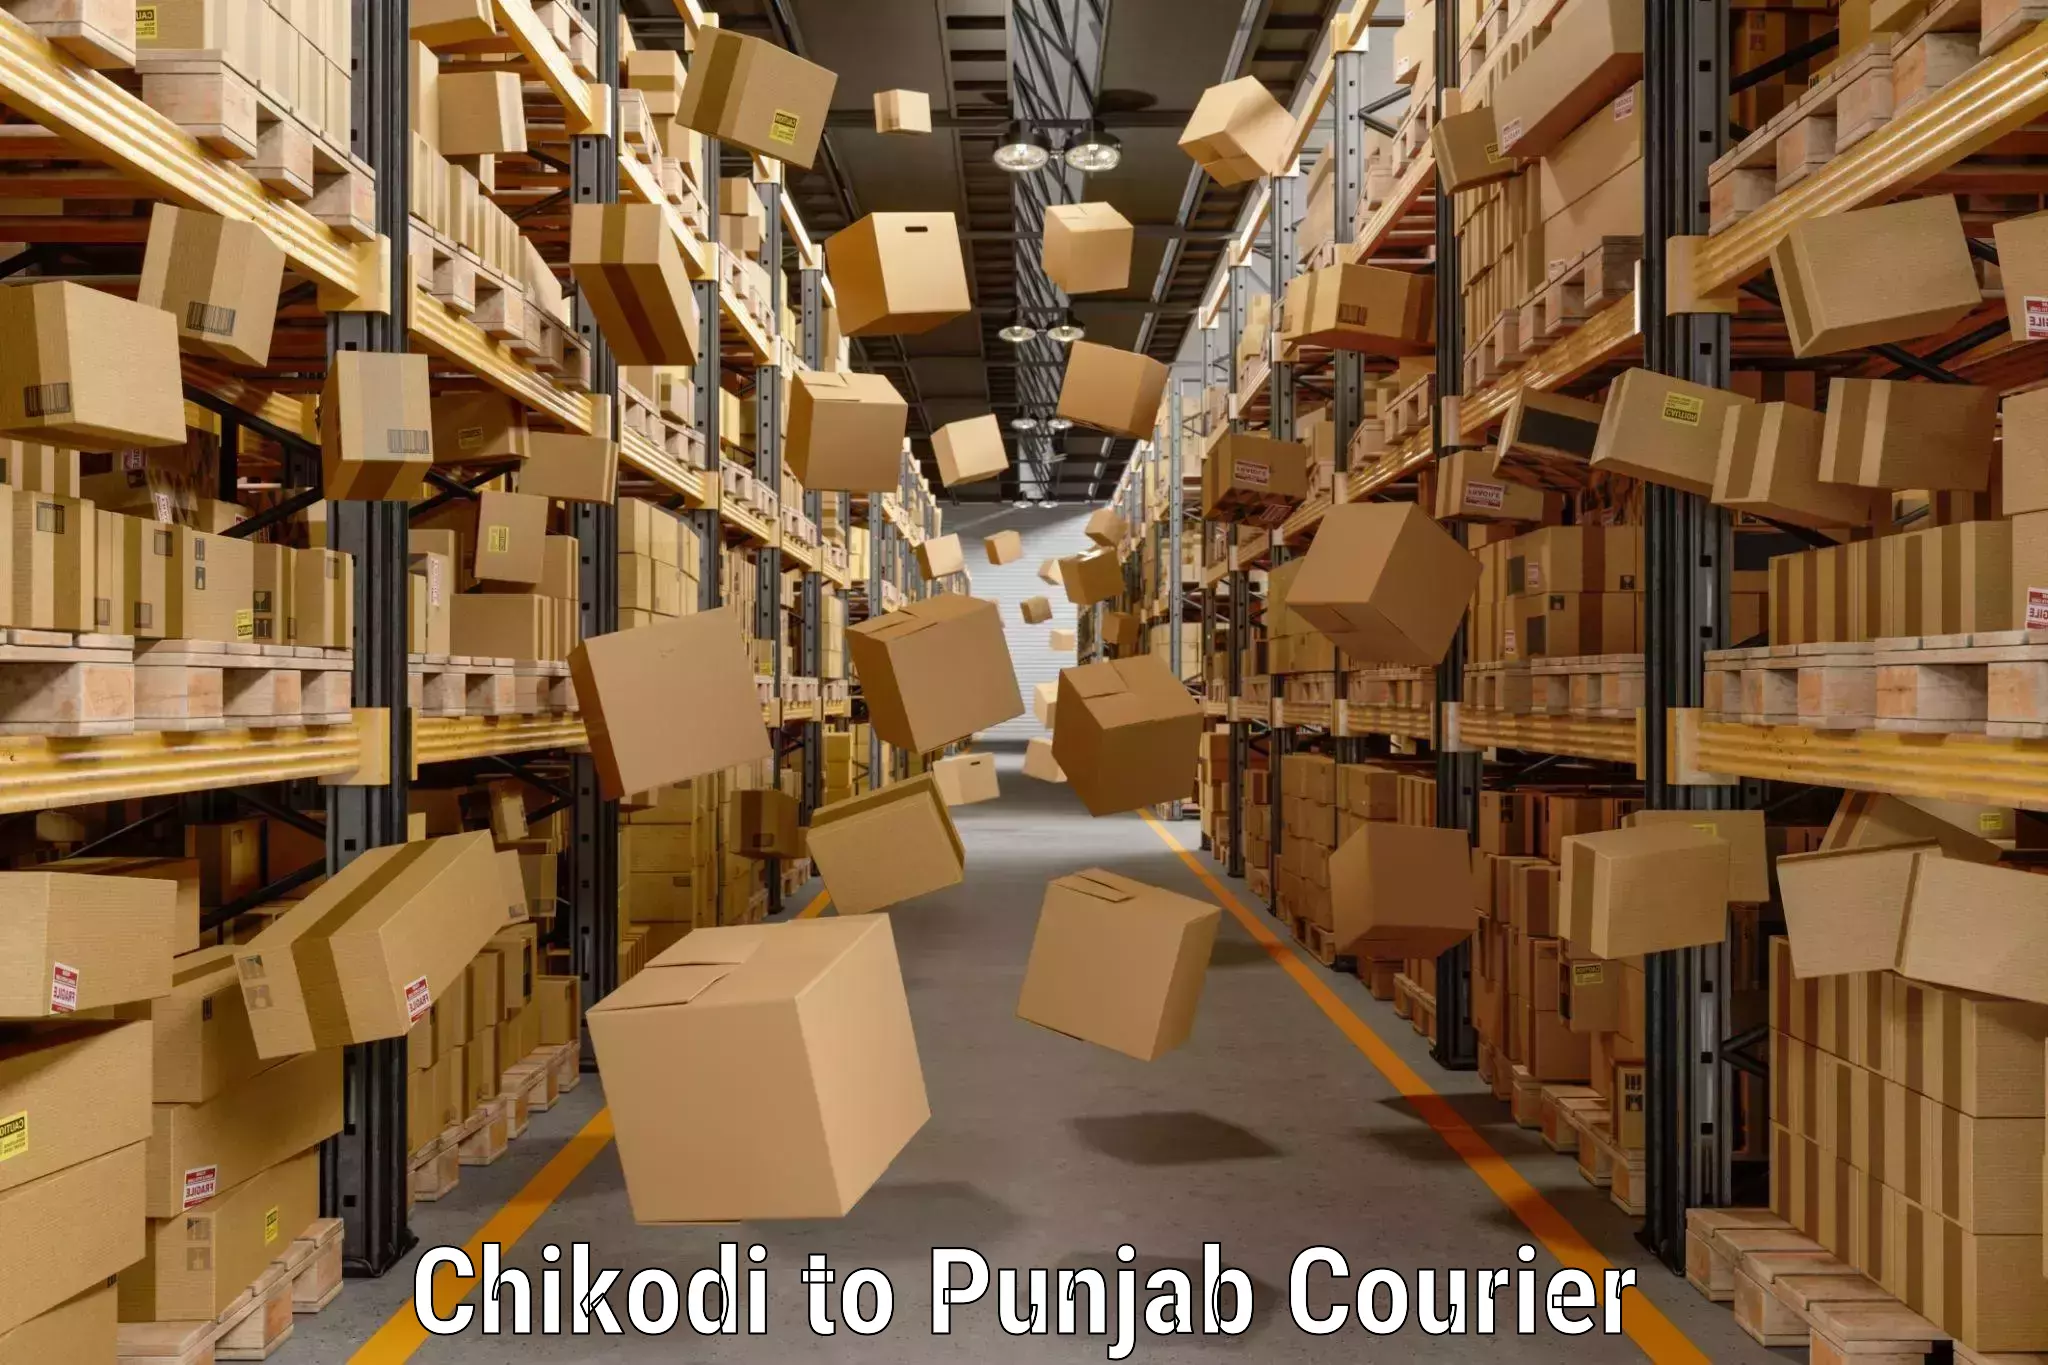 Baggage transport cost Chikodi to Punjab